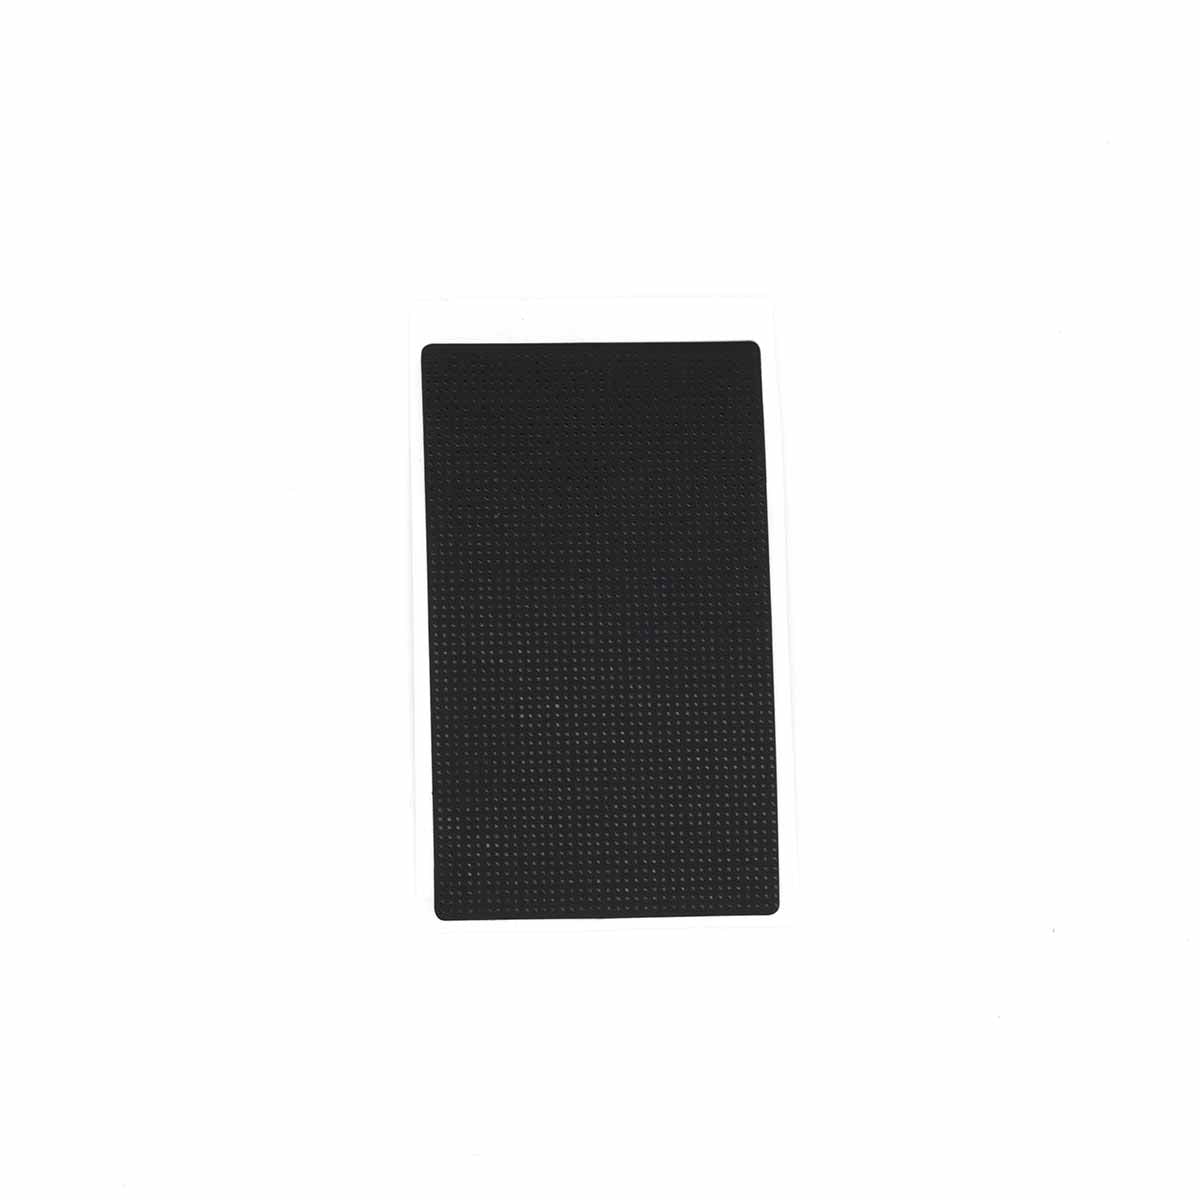 Sticker für Lenovo ThinkPad Touchpad Aufkleber Folie T410 T420 T430 T410S T420S T430S T530 T510 T520 W510 W520 W530